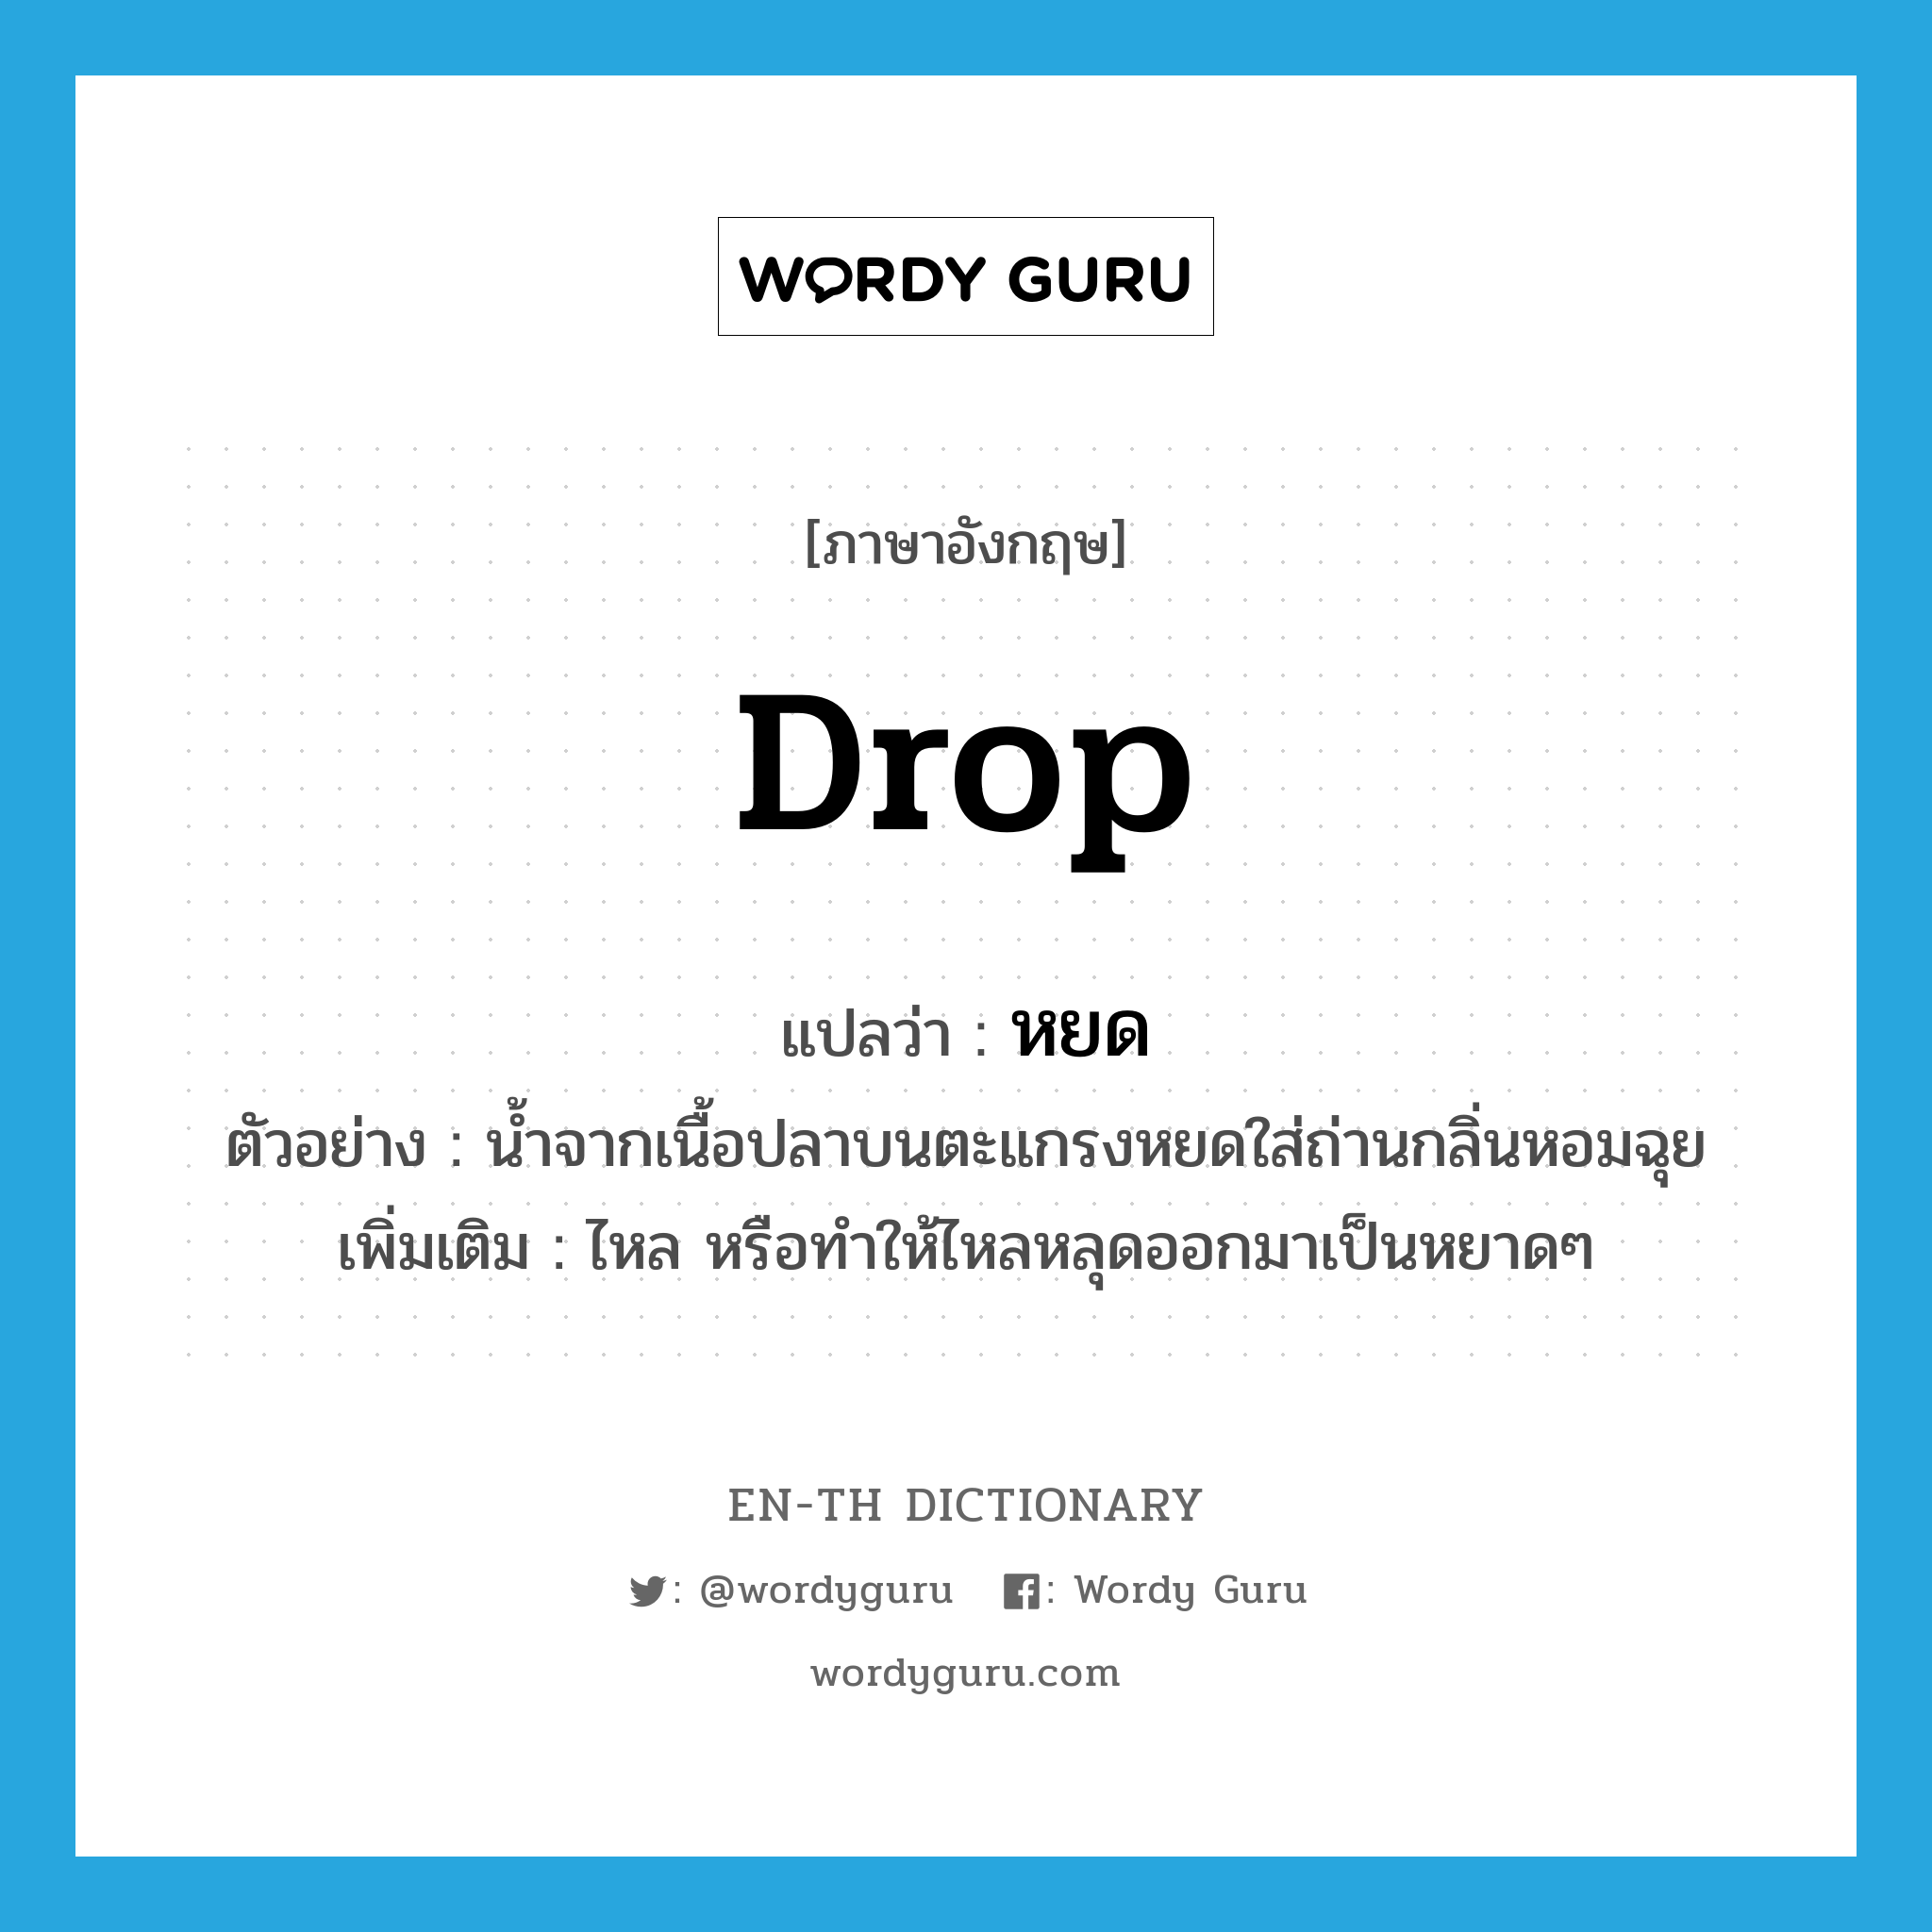 drop แปลว่า?, คำศัพท์ภาษาอังกฤษ drop แปลว่า หยด ประเภท V ตัวอย่าง น้ำจากเนื้อปลาบนตะแกรงหยดใส่ถ่านกลิ่นหอมฉุย เพิ่มเติม ไหล หรือทำให้ไหลหลุดออกมาเป็นหยาดๆ หมวด V